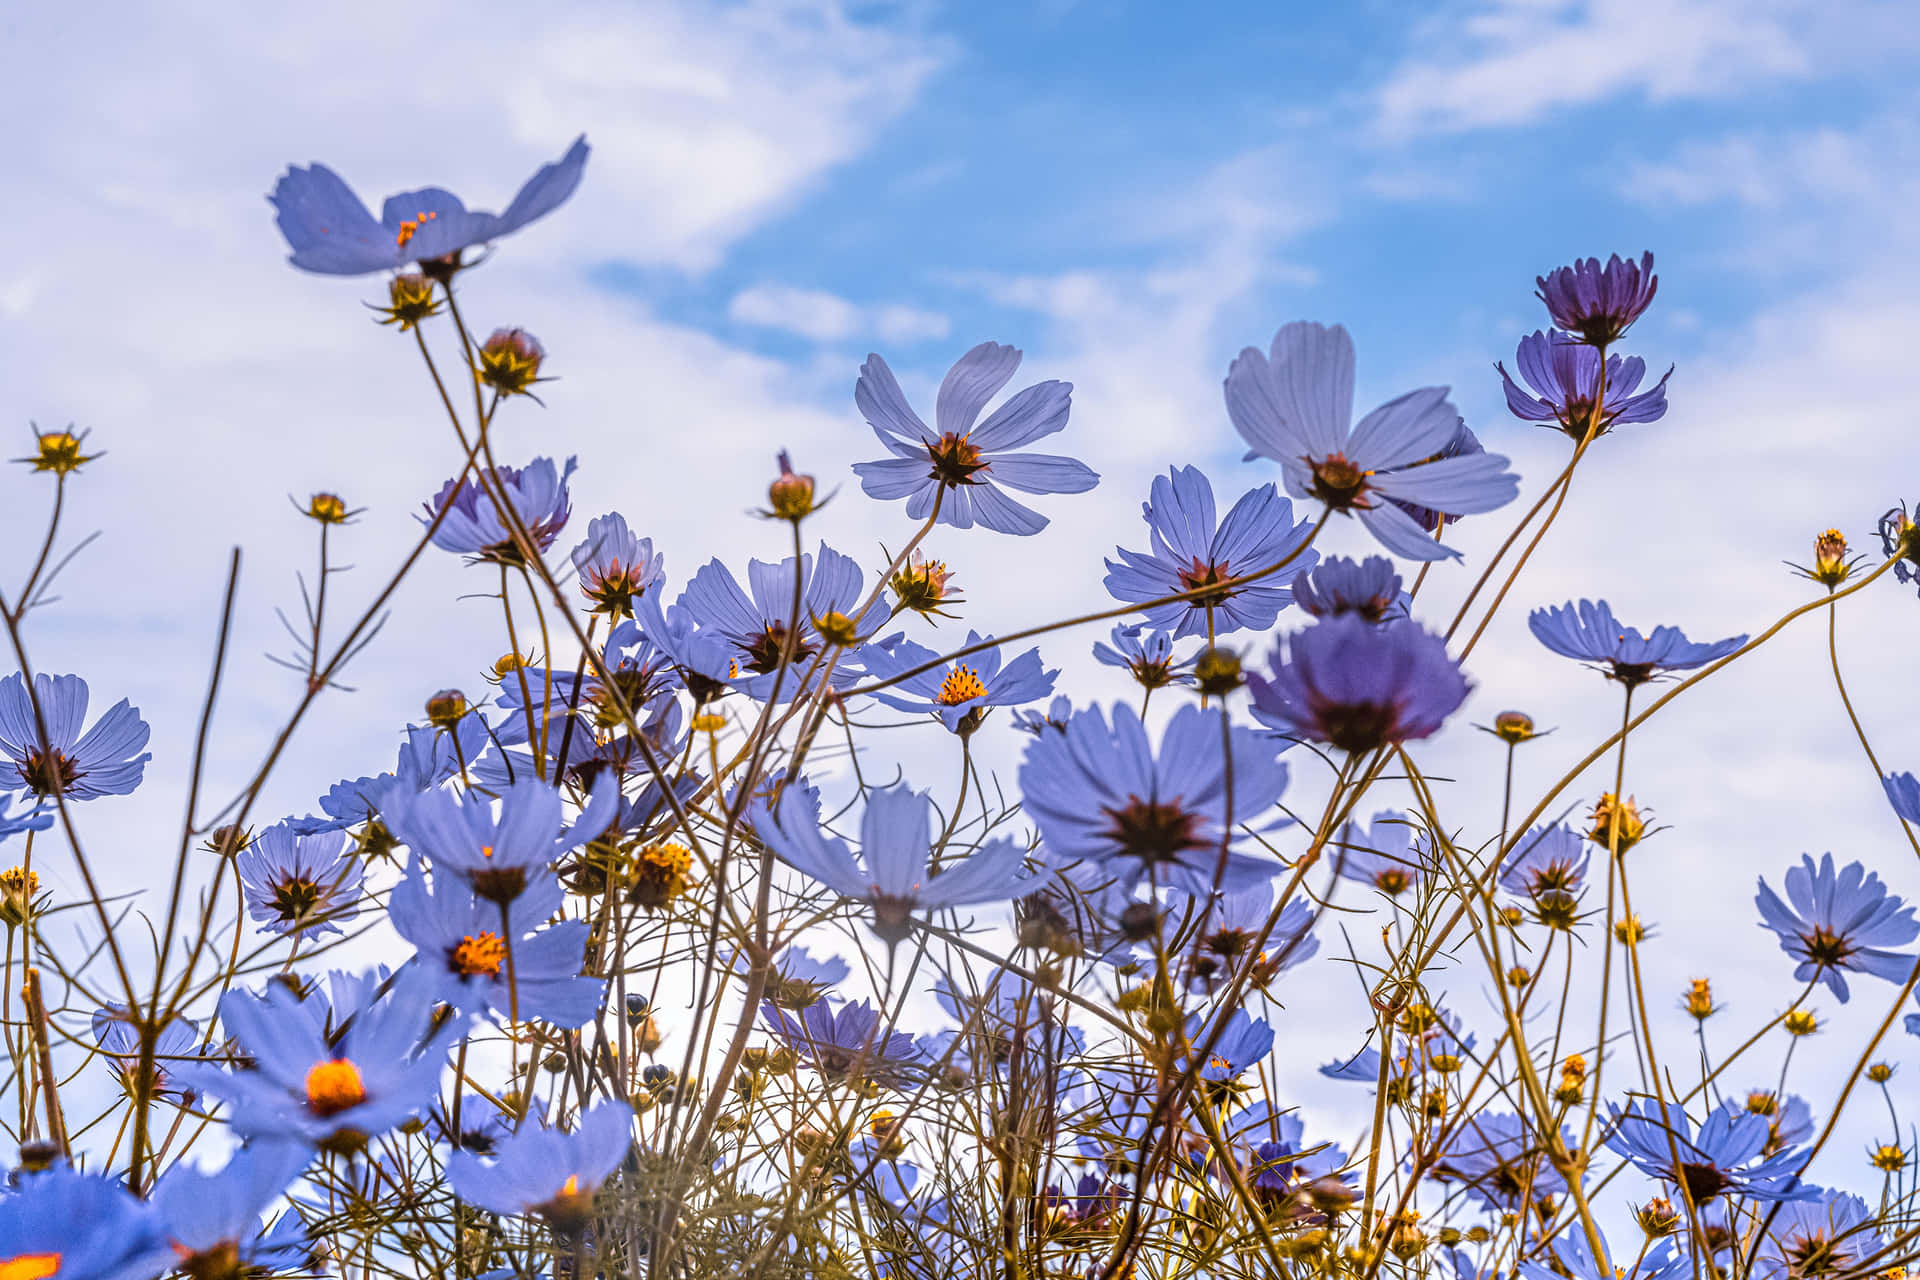 A Blue Flower In The Field